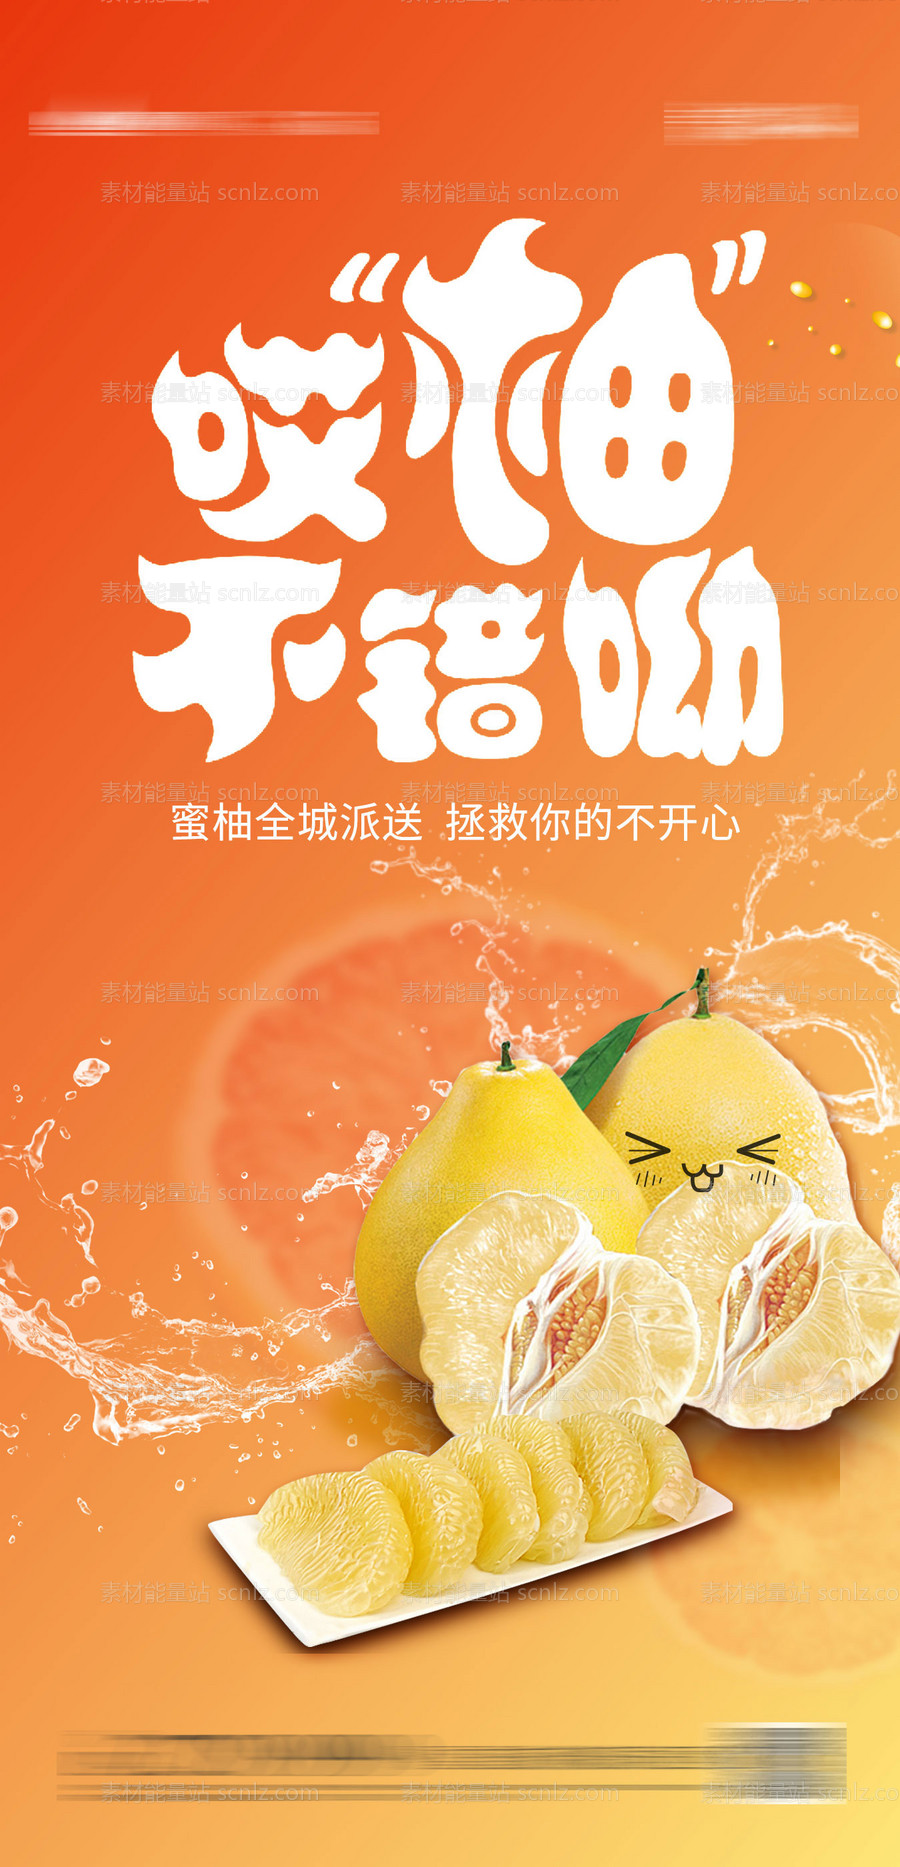 素材能量站-送柚子活动海报